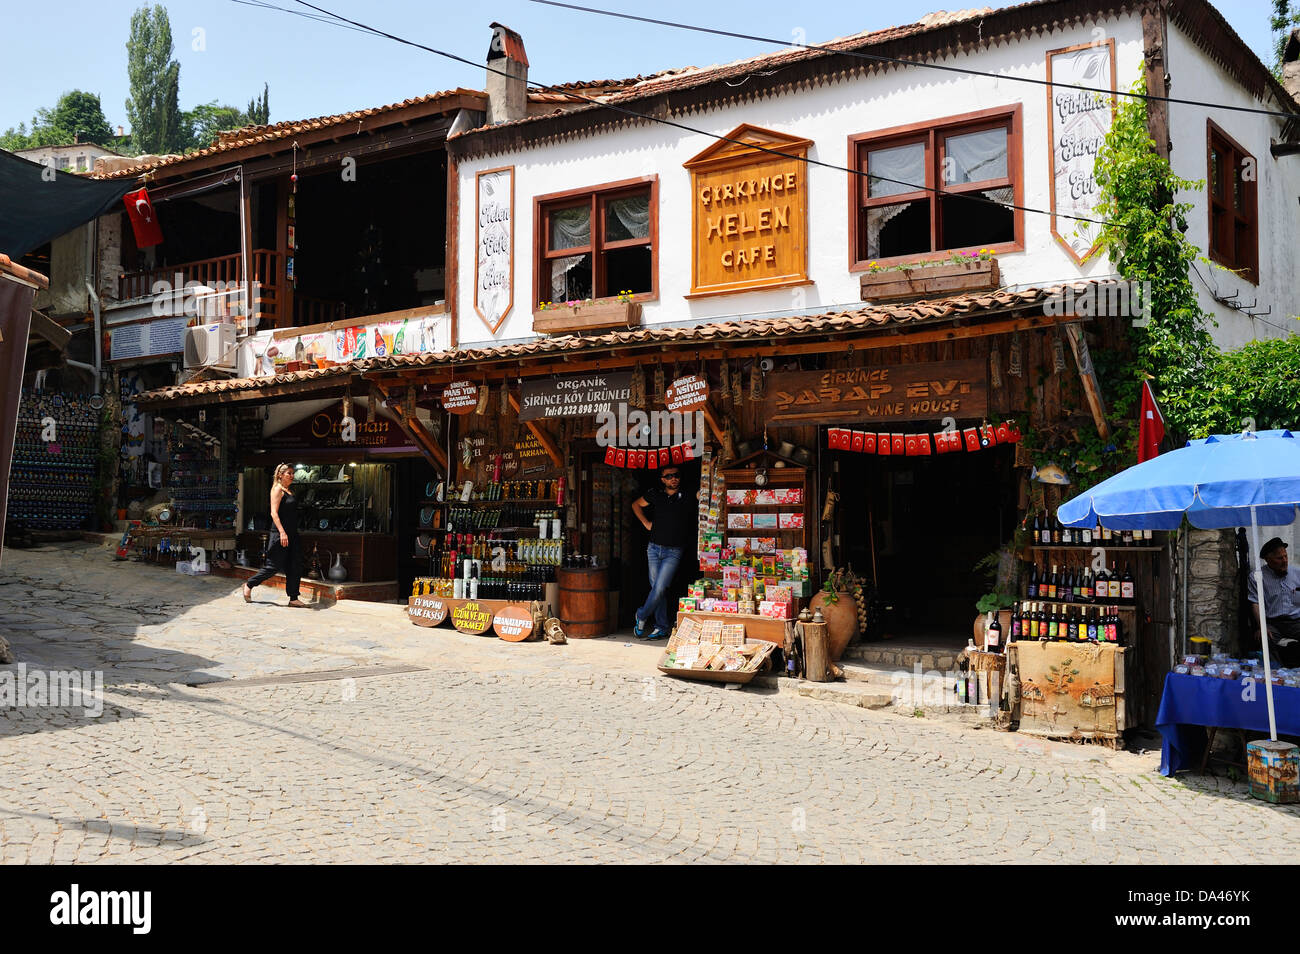 Boutiques pour touristes dans le vieux village de Sirince grec près de Selcuk, Turquie Banque D'Images